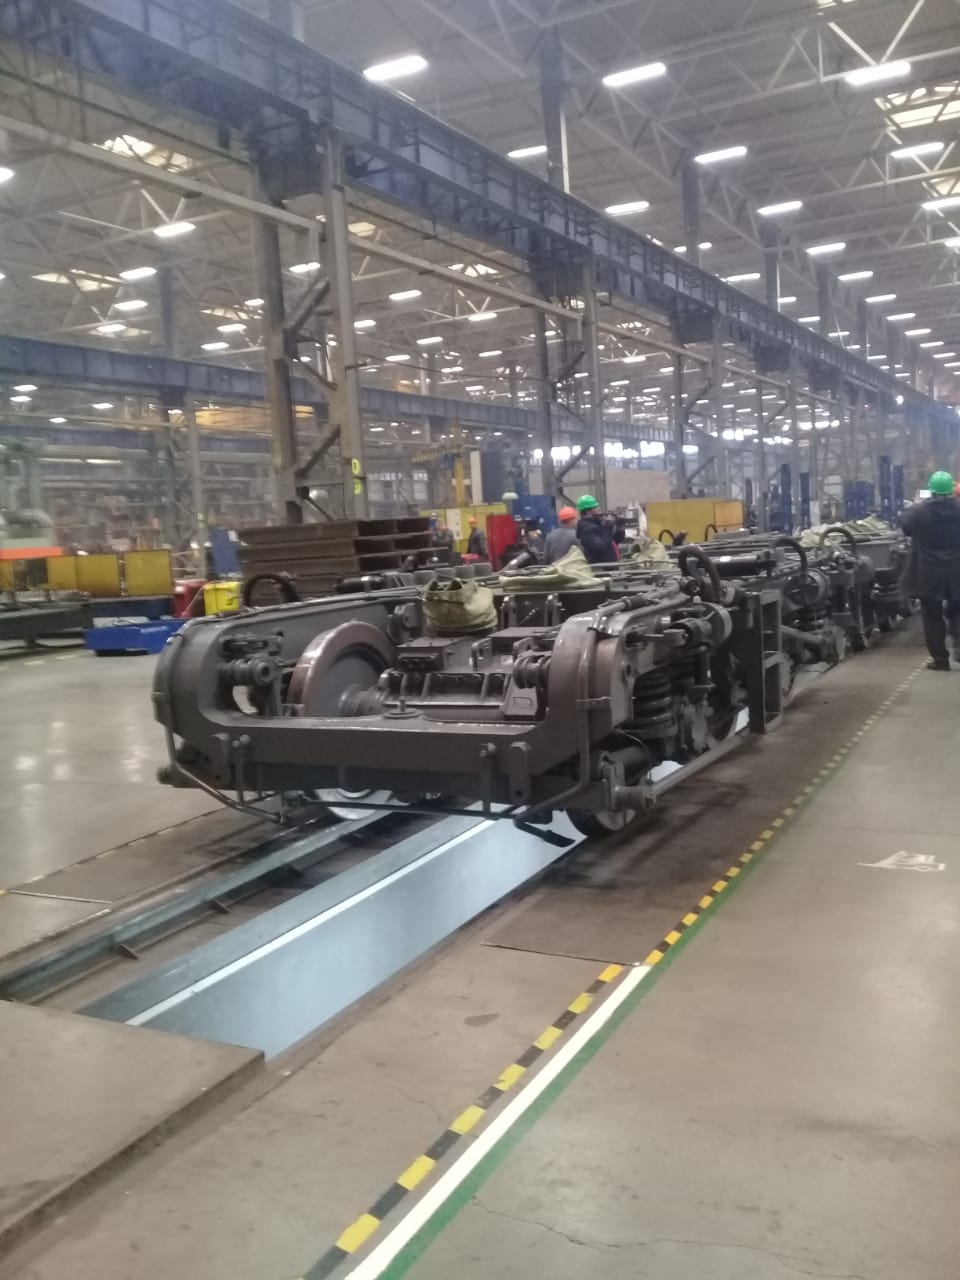  جولة لليوم السابع بمصنع جرارات السكة الحديد الروسى (10)